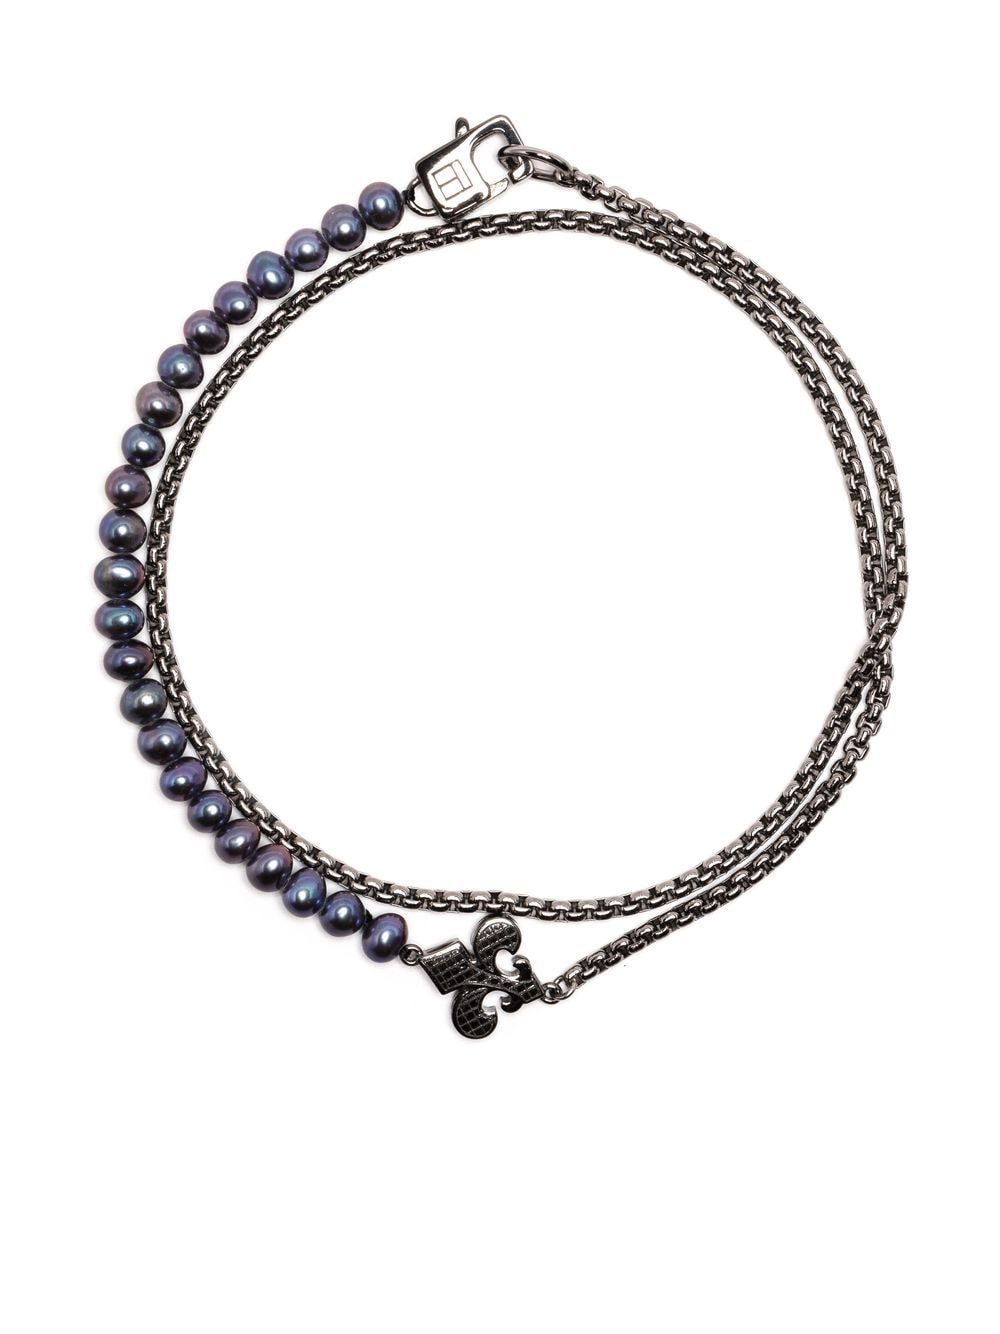 bead-embellished chain-link bracelet